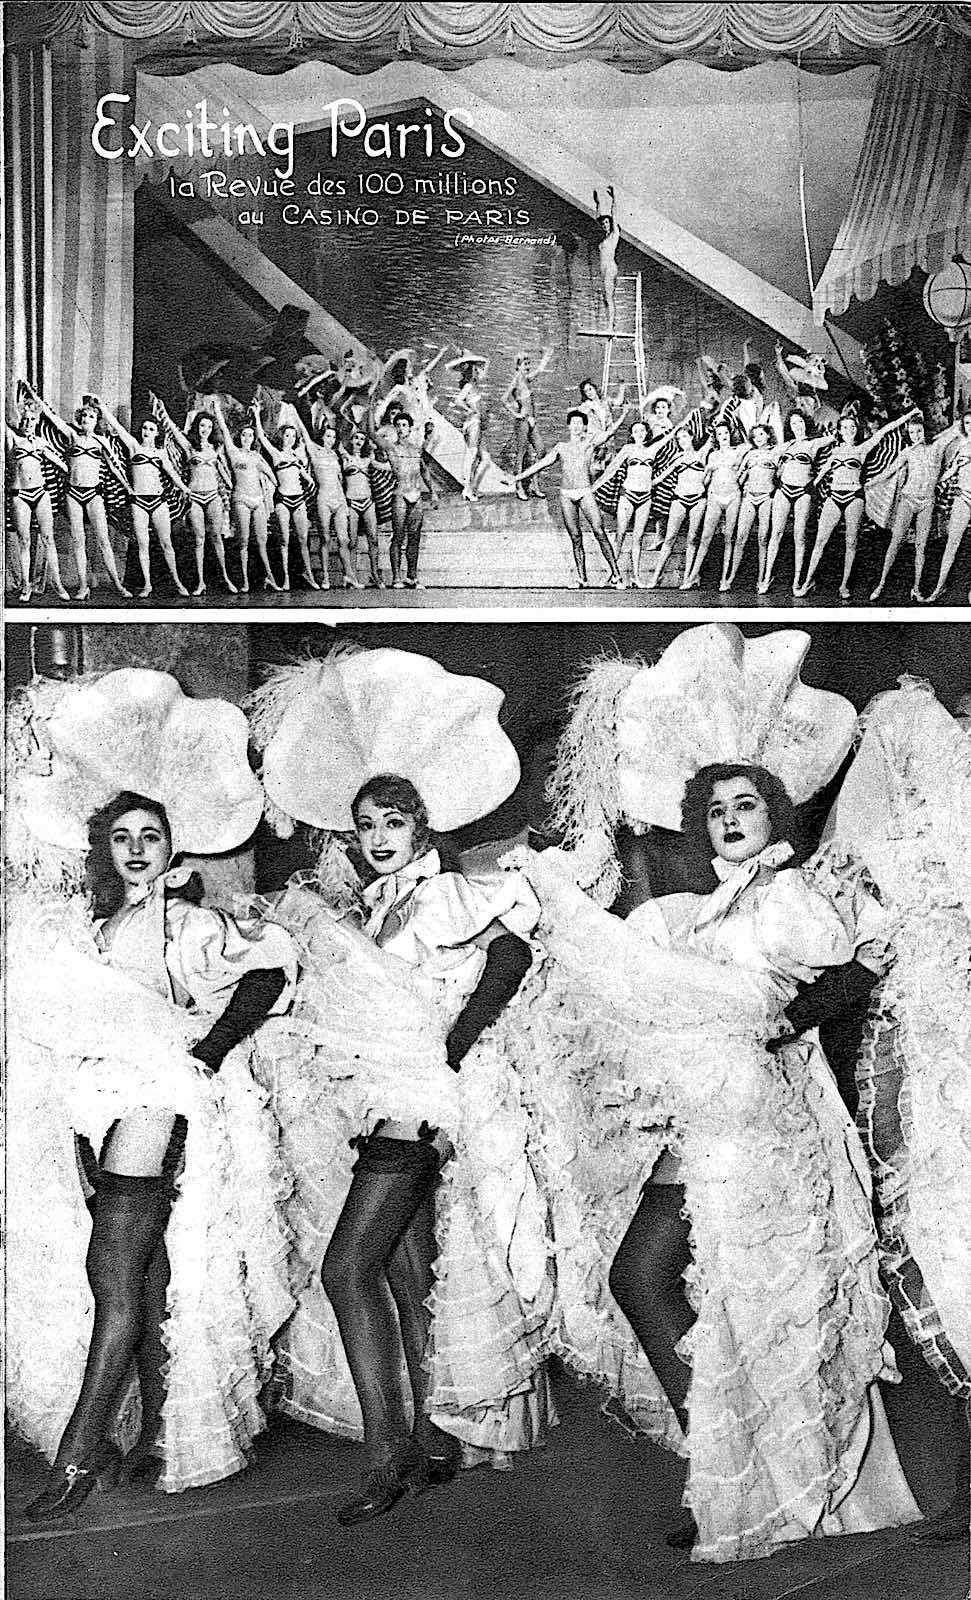 1946 Paris Showgirls, a photograph